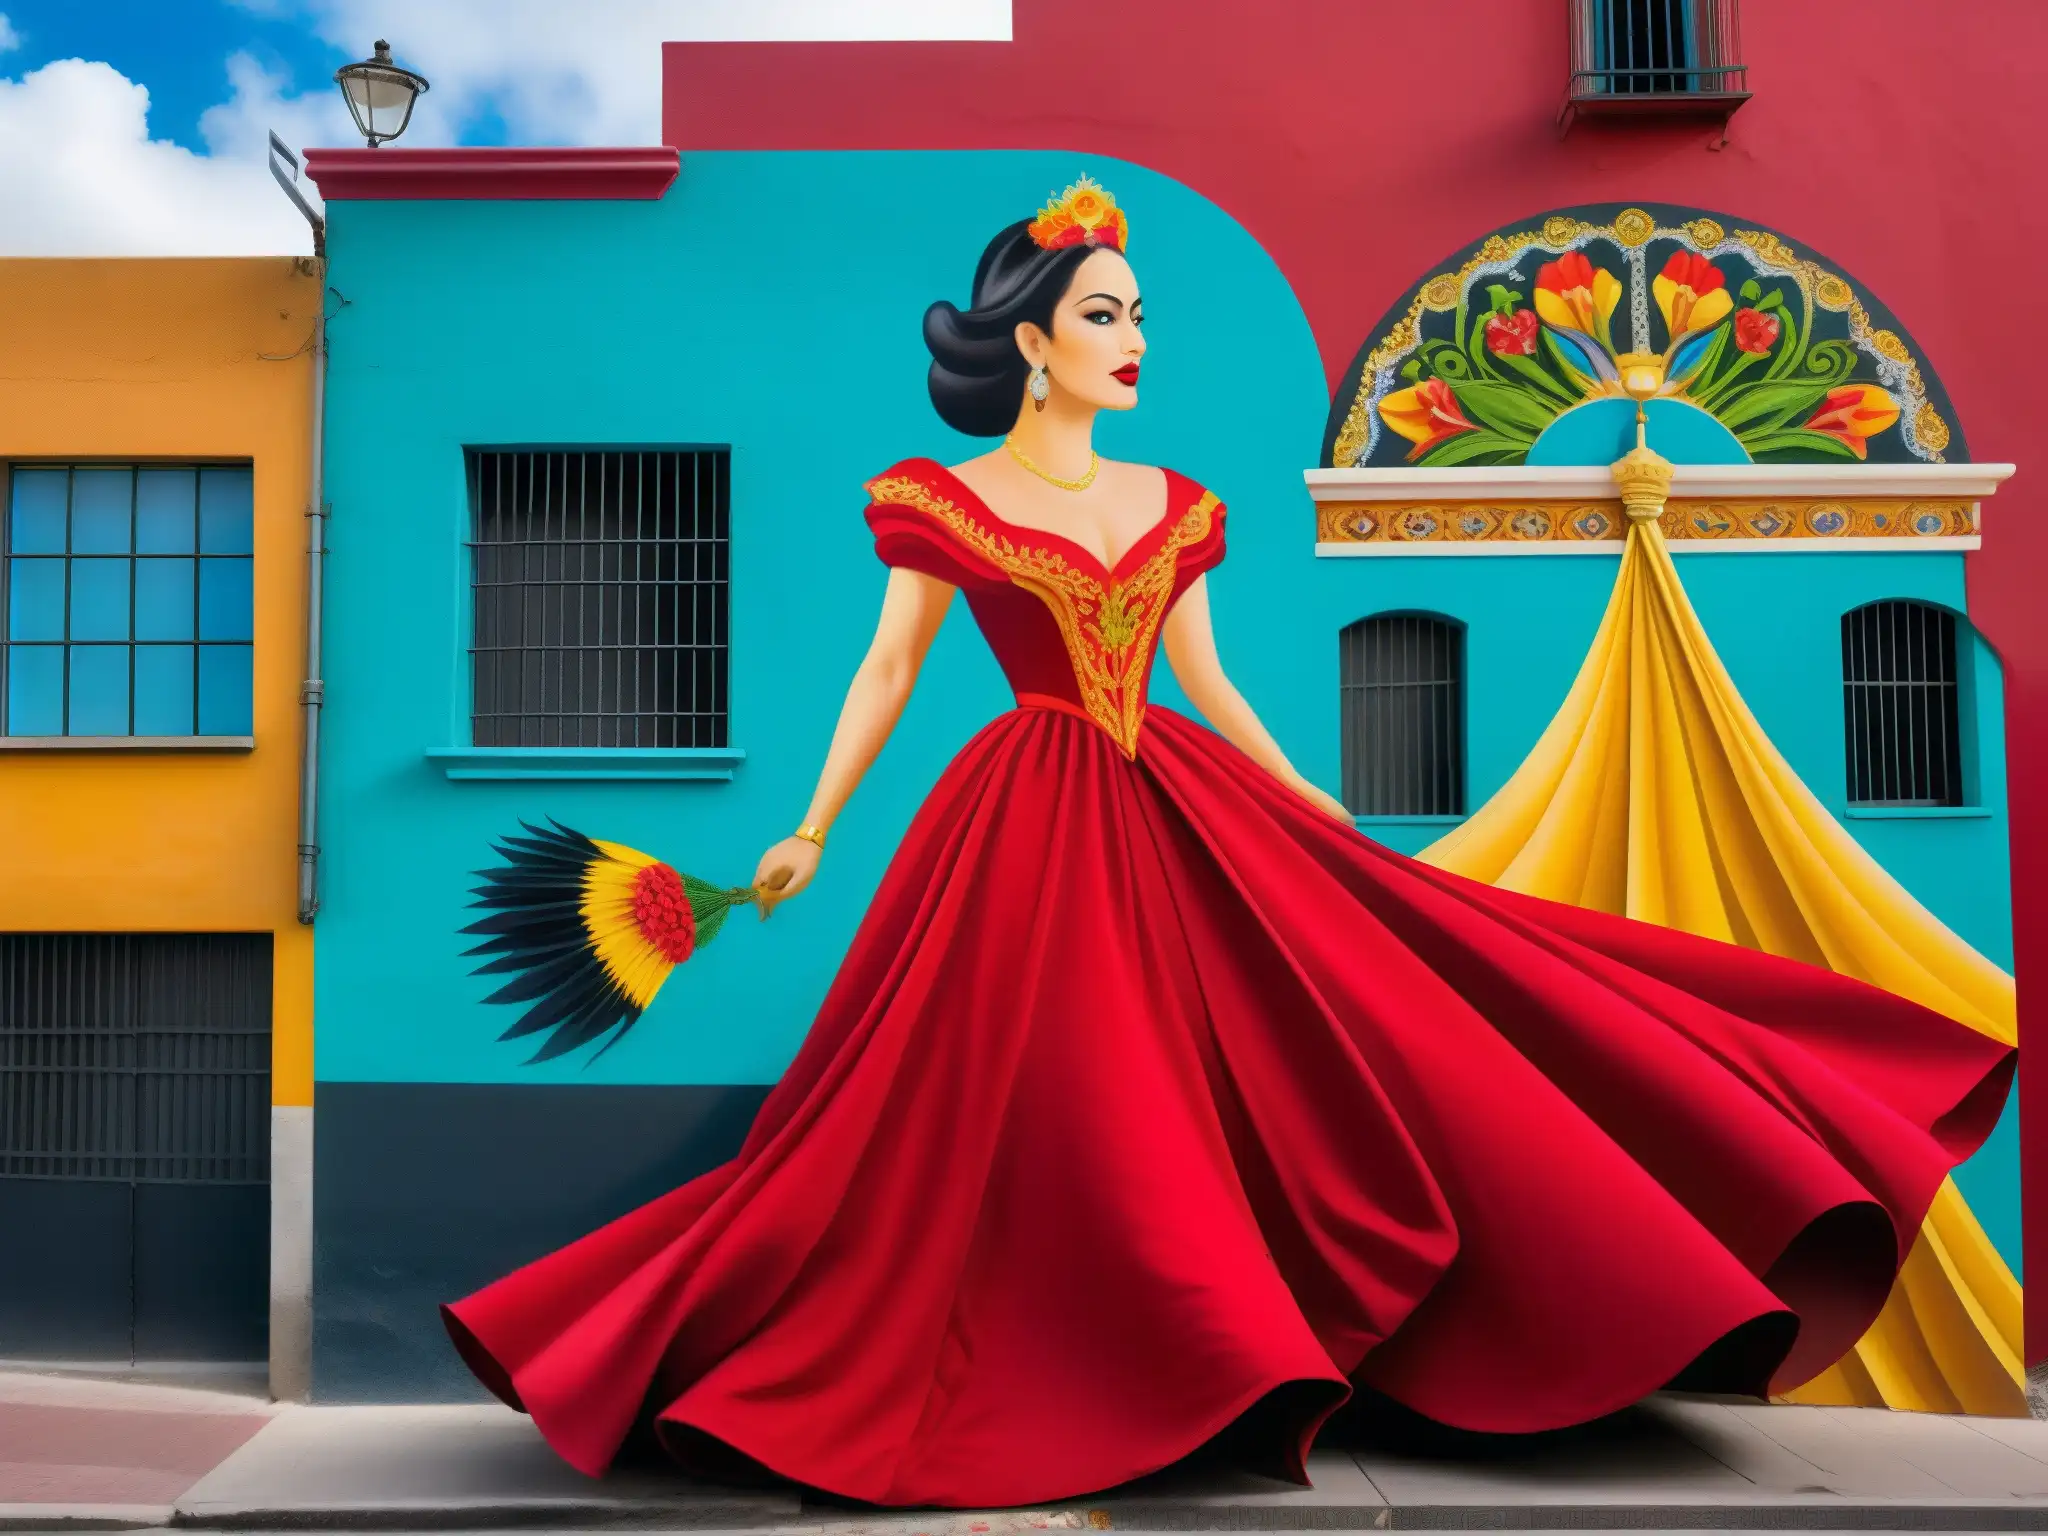 Un mural detallado de la Dama de Rojo en la Calle de la Quemada, capturando la elegancia y terror del enigmático mito mexicano